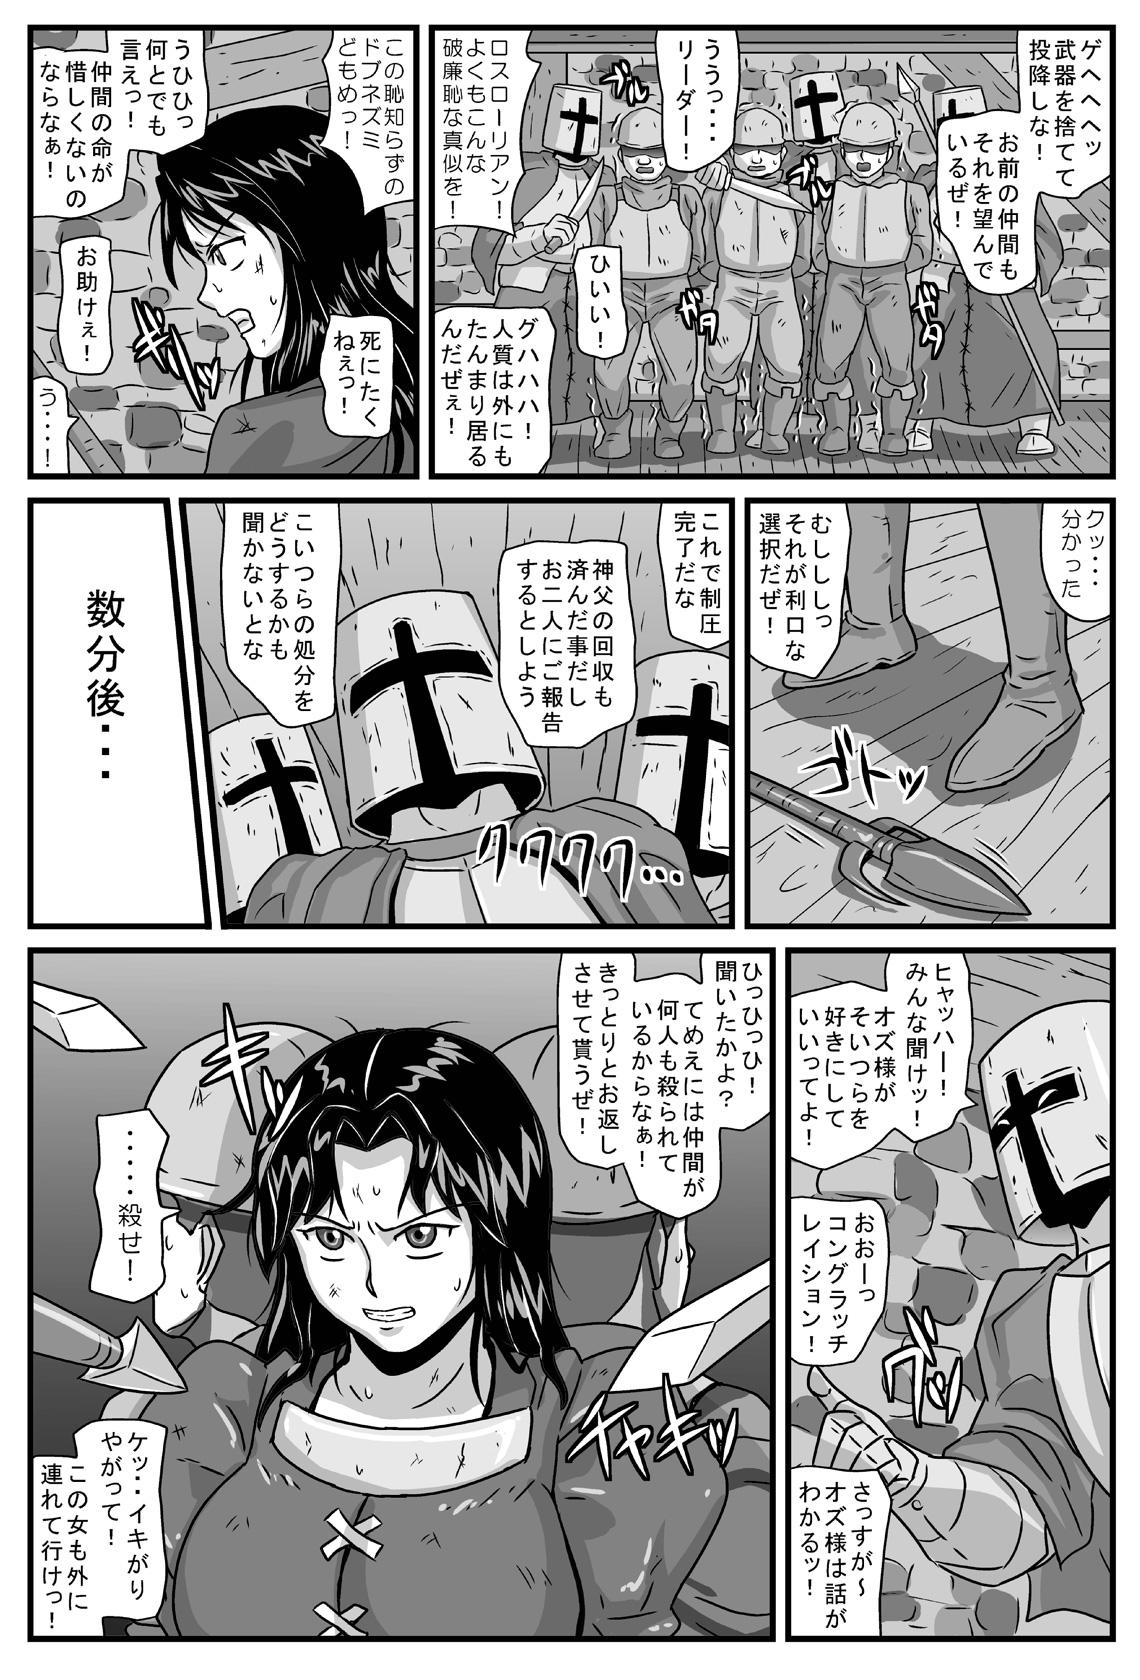 Eating Guerrilla no Onna Leader wa Honoo no 26-sai Kurokami Shojo - Tactics ogre Gilf - Page 3